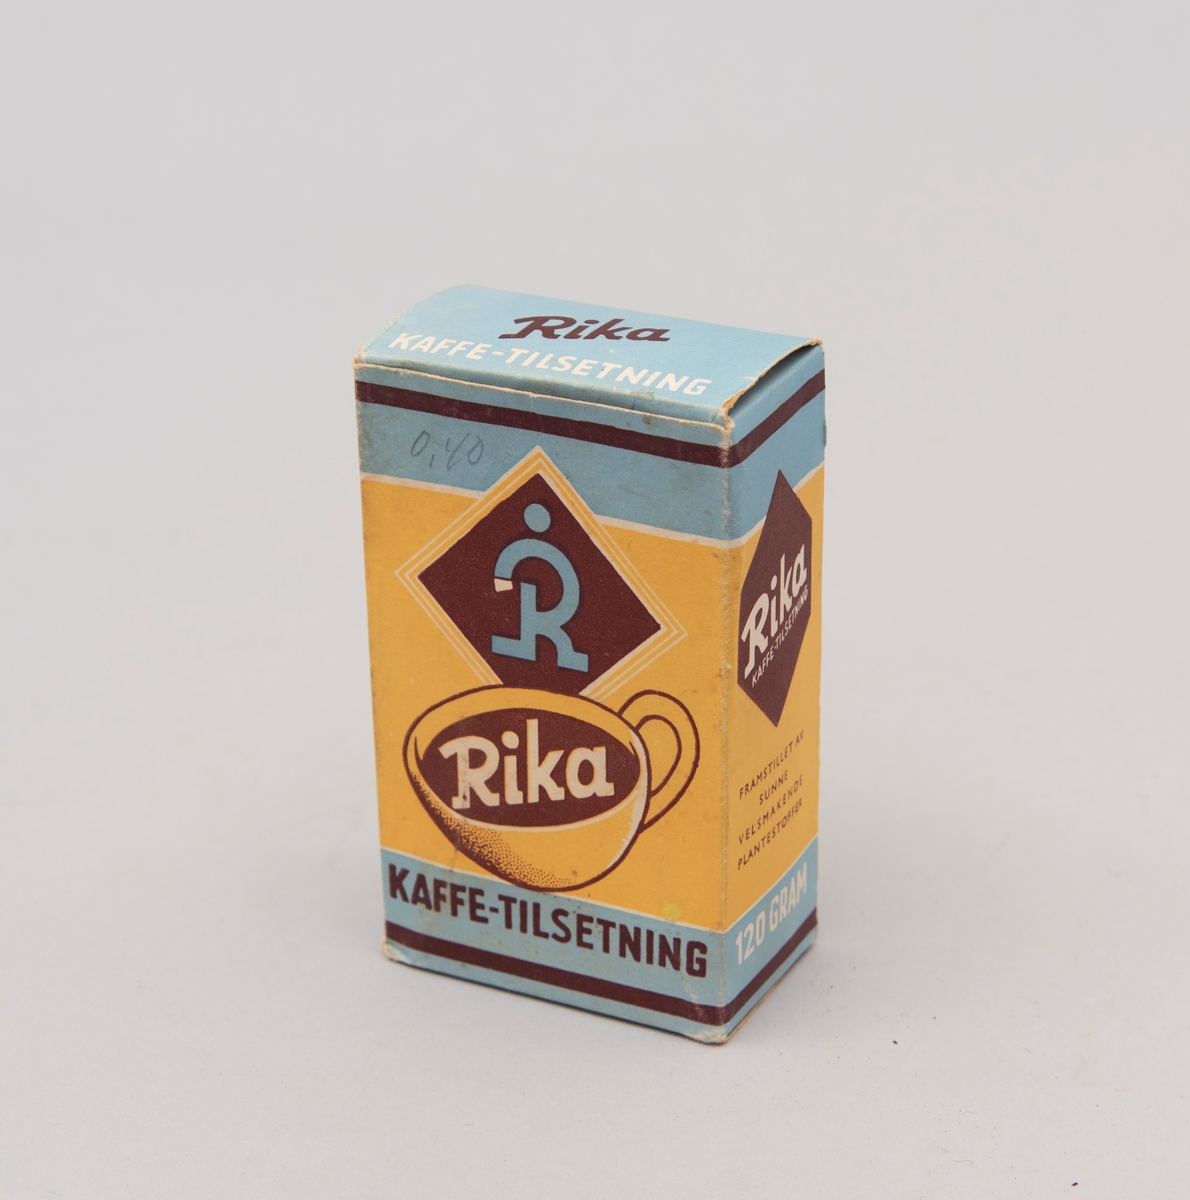 "Rika. Kaffe-tilsetning". Pappeske med innhold i matpapir. Påskrevet."0,40" (pris) med gråblyant. Produsert av A/S P.G. Rieber & Søn, Bergen. (motiv i gult, blått og brunt)